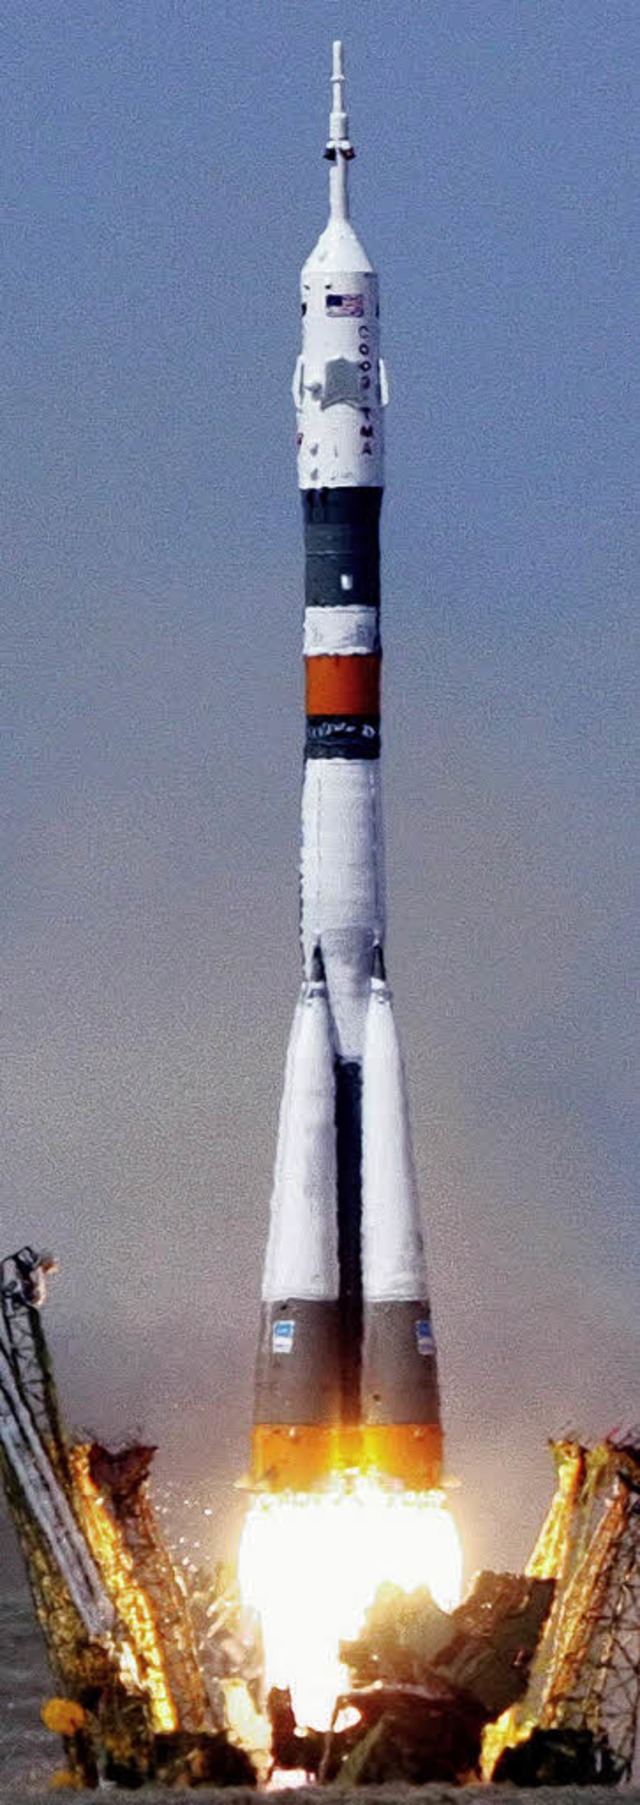 Da hebt sie ab: Diese Rakete bringt die ISS-Besatzung ins All.   | Foto: dpa